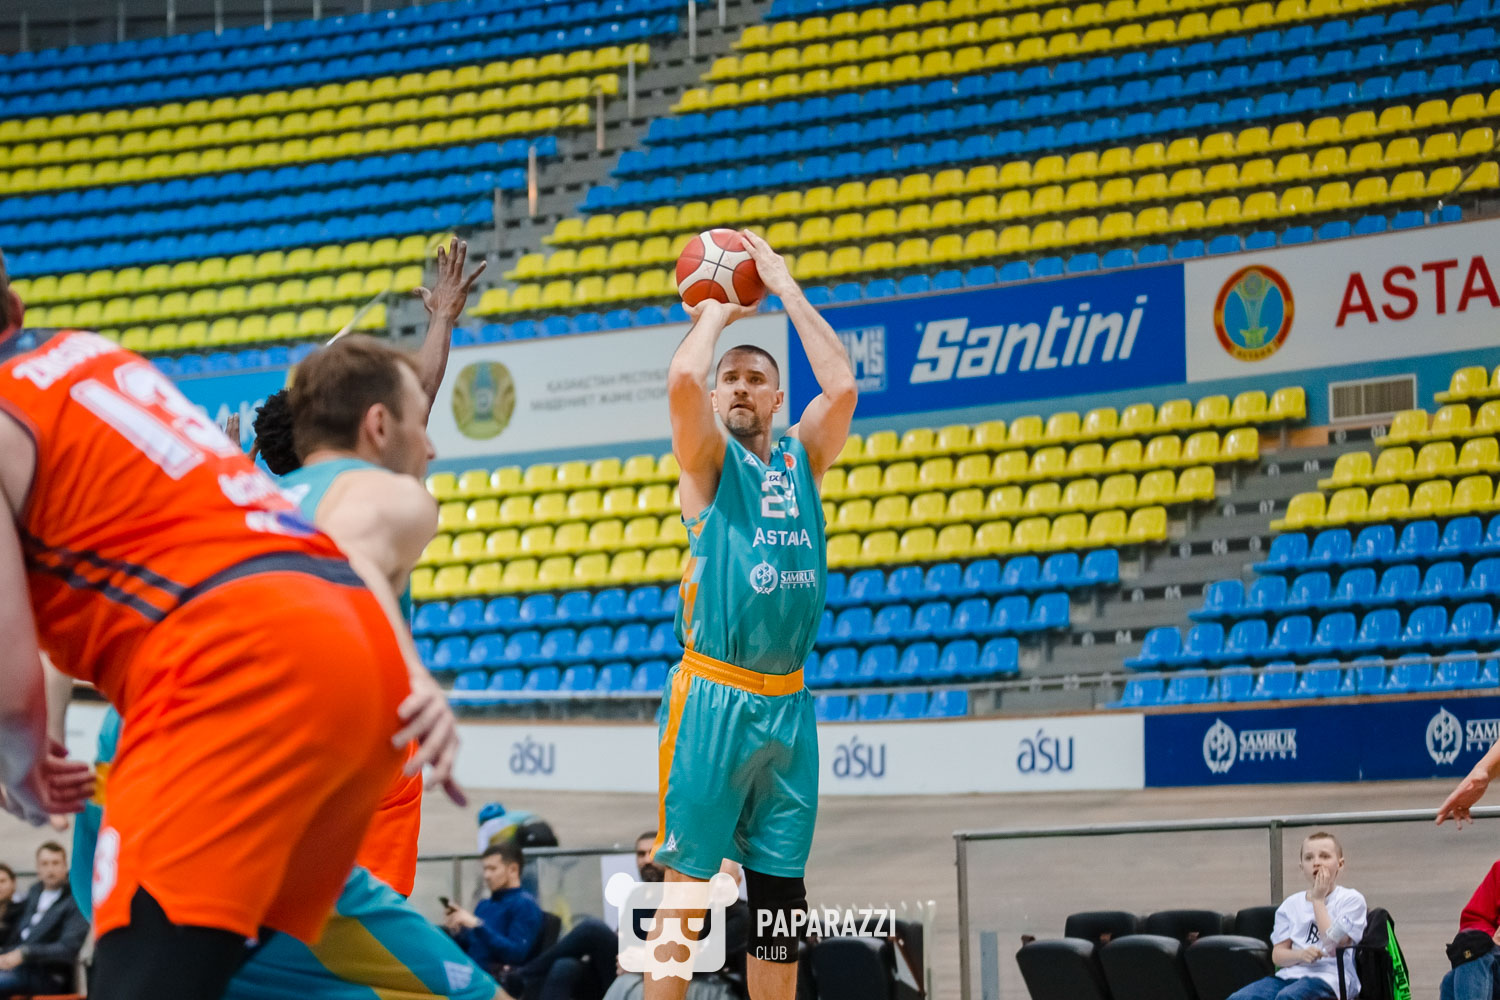 ПБК "Астана"- БК "Irbis Almaty" (Алматы). Баскетбол. Национальная лига